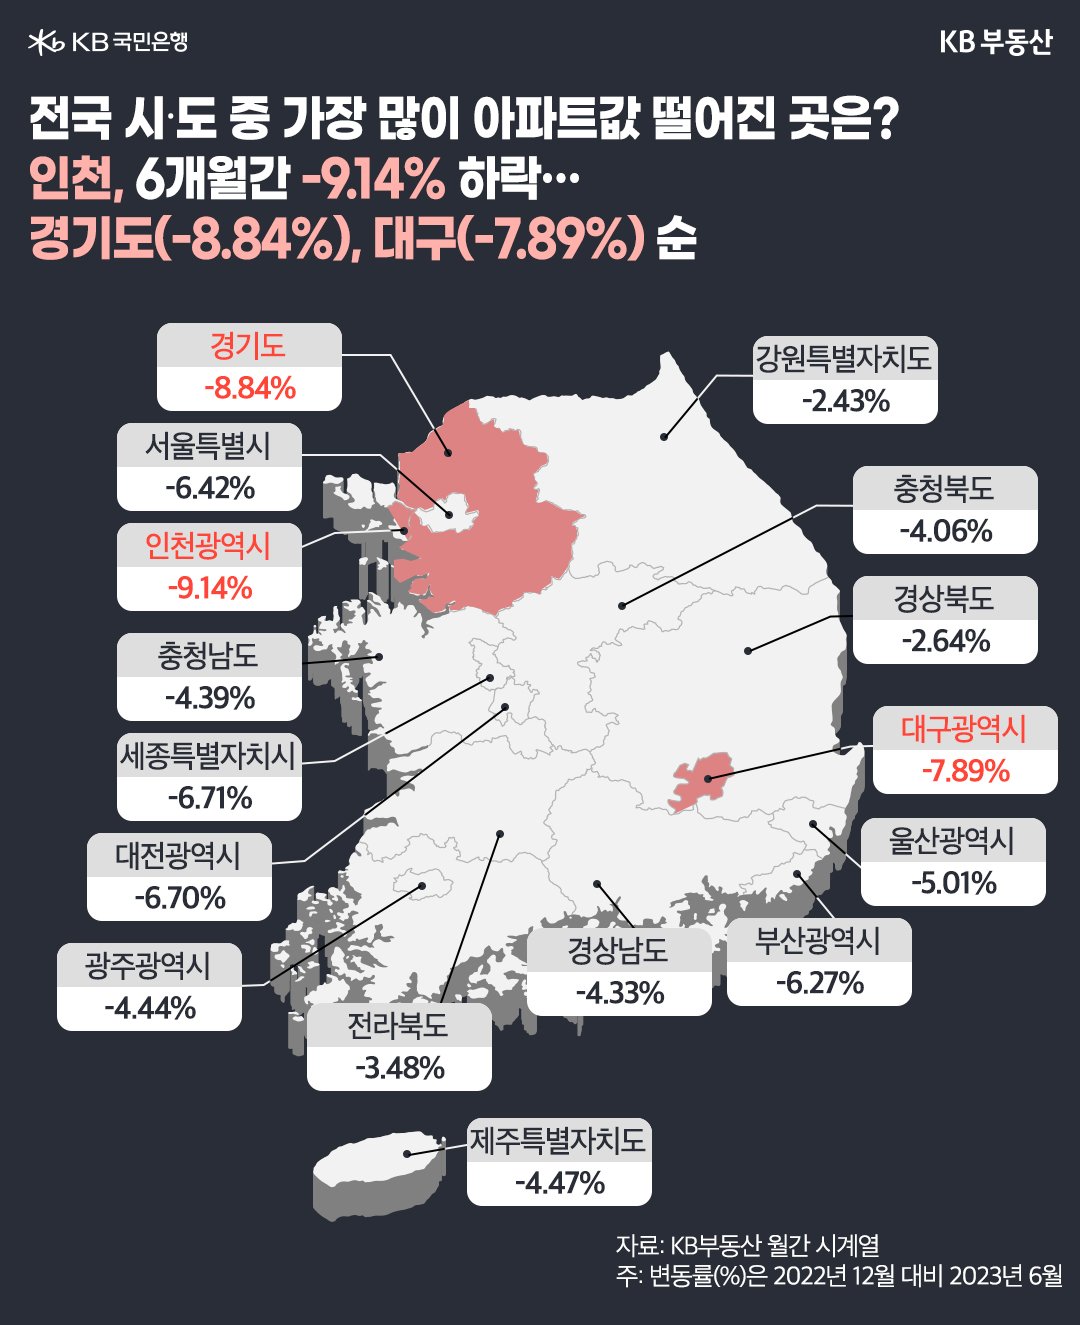 전국 시·도의 '아파트 값 변동률'을 도식화하였다. 인천은 6개월간 -9.14% 하락하였고, 경기도는 -8.84%, 대구는 -7.89% 하락하였다.